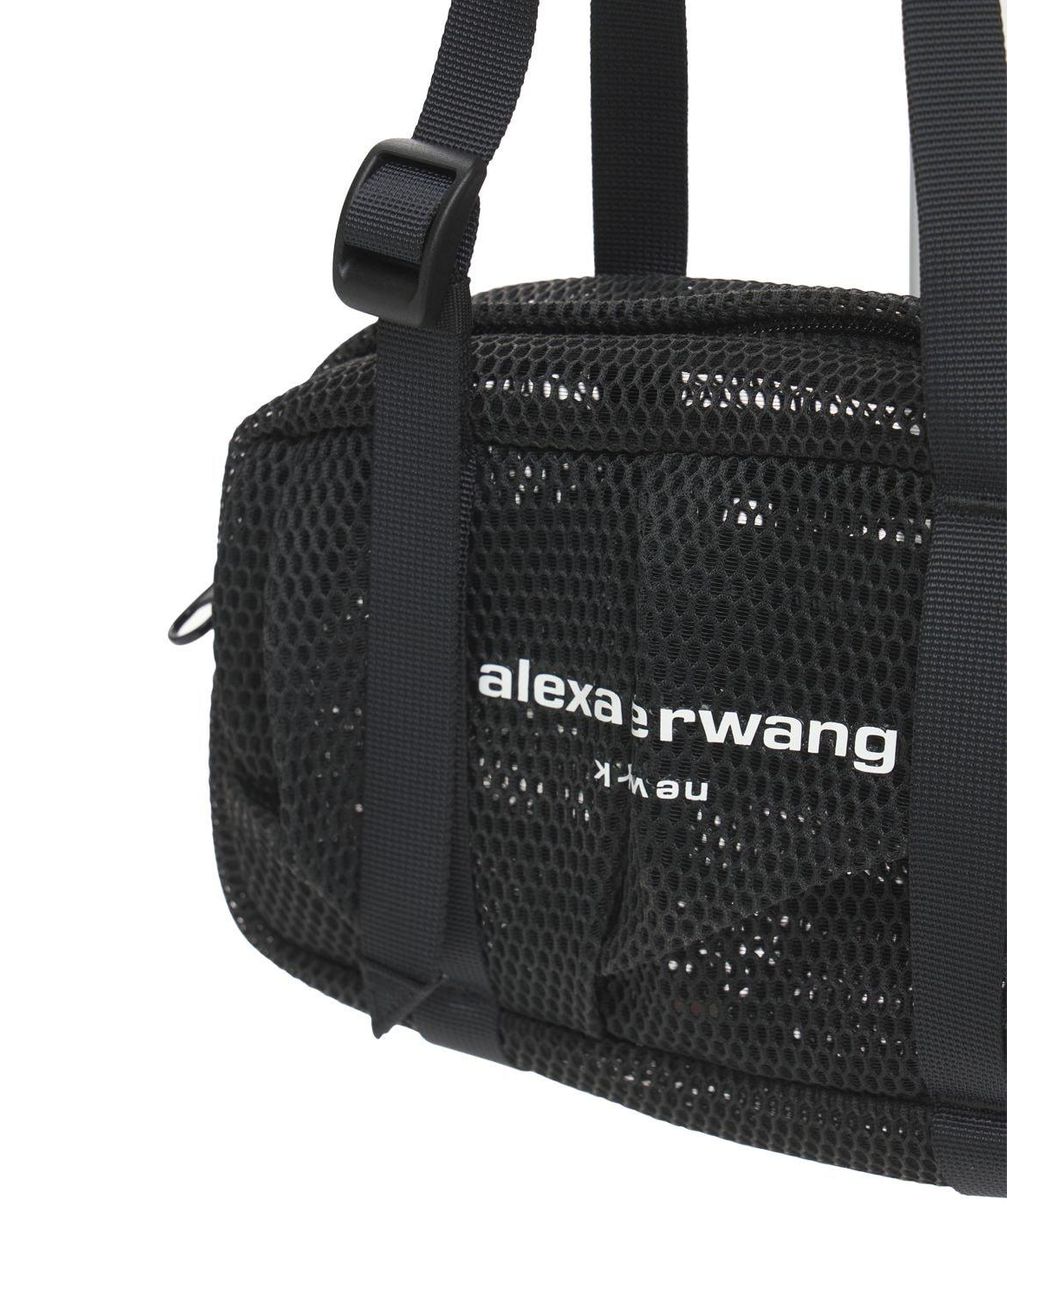 Alexander Wang Wangsport Mini Duffle Bag in Black | Lyst